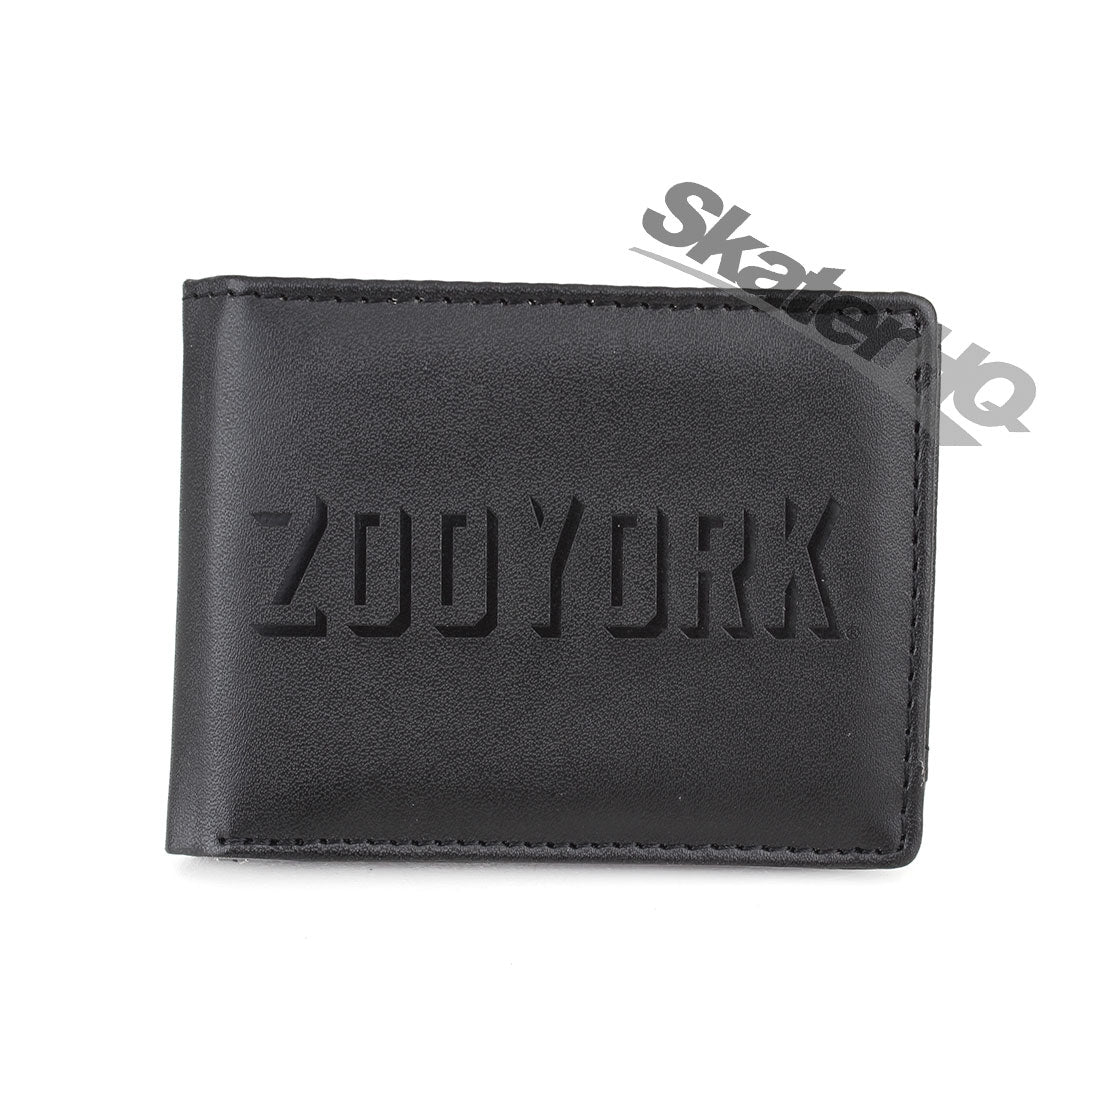 Zoo York Cast Wallet - Black Wallets